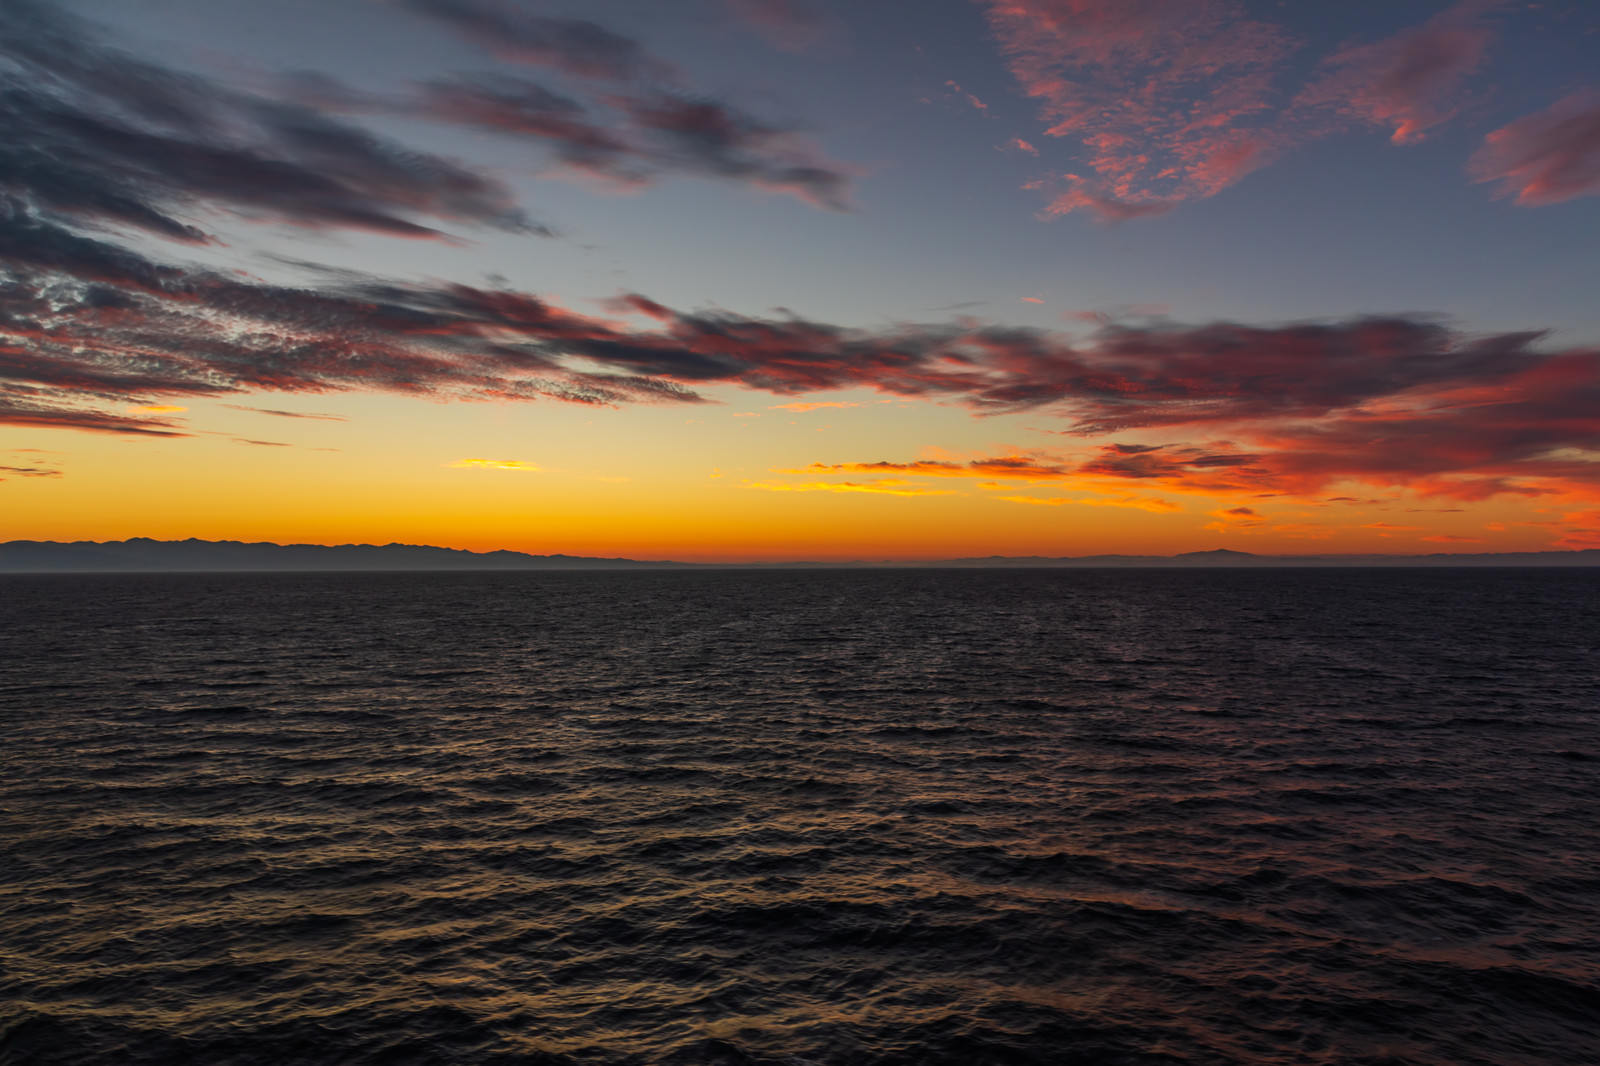 「夜明け前の日本海 | 写真の無料素材・フリー素材 - ぱくたそ」の写真